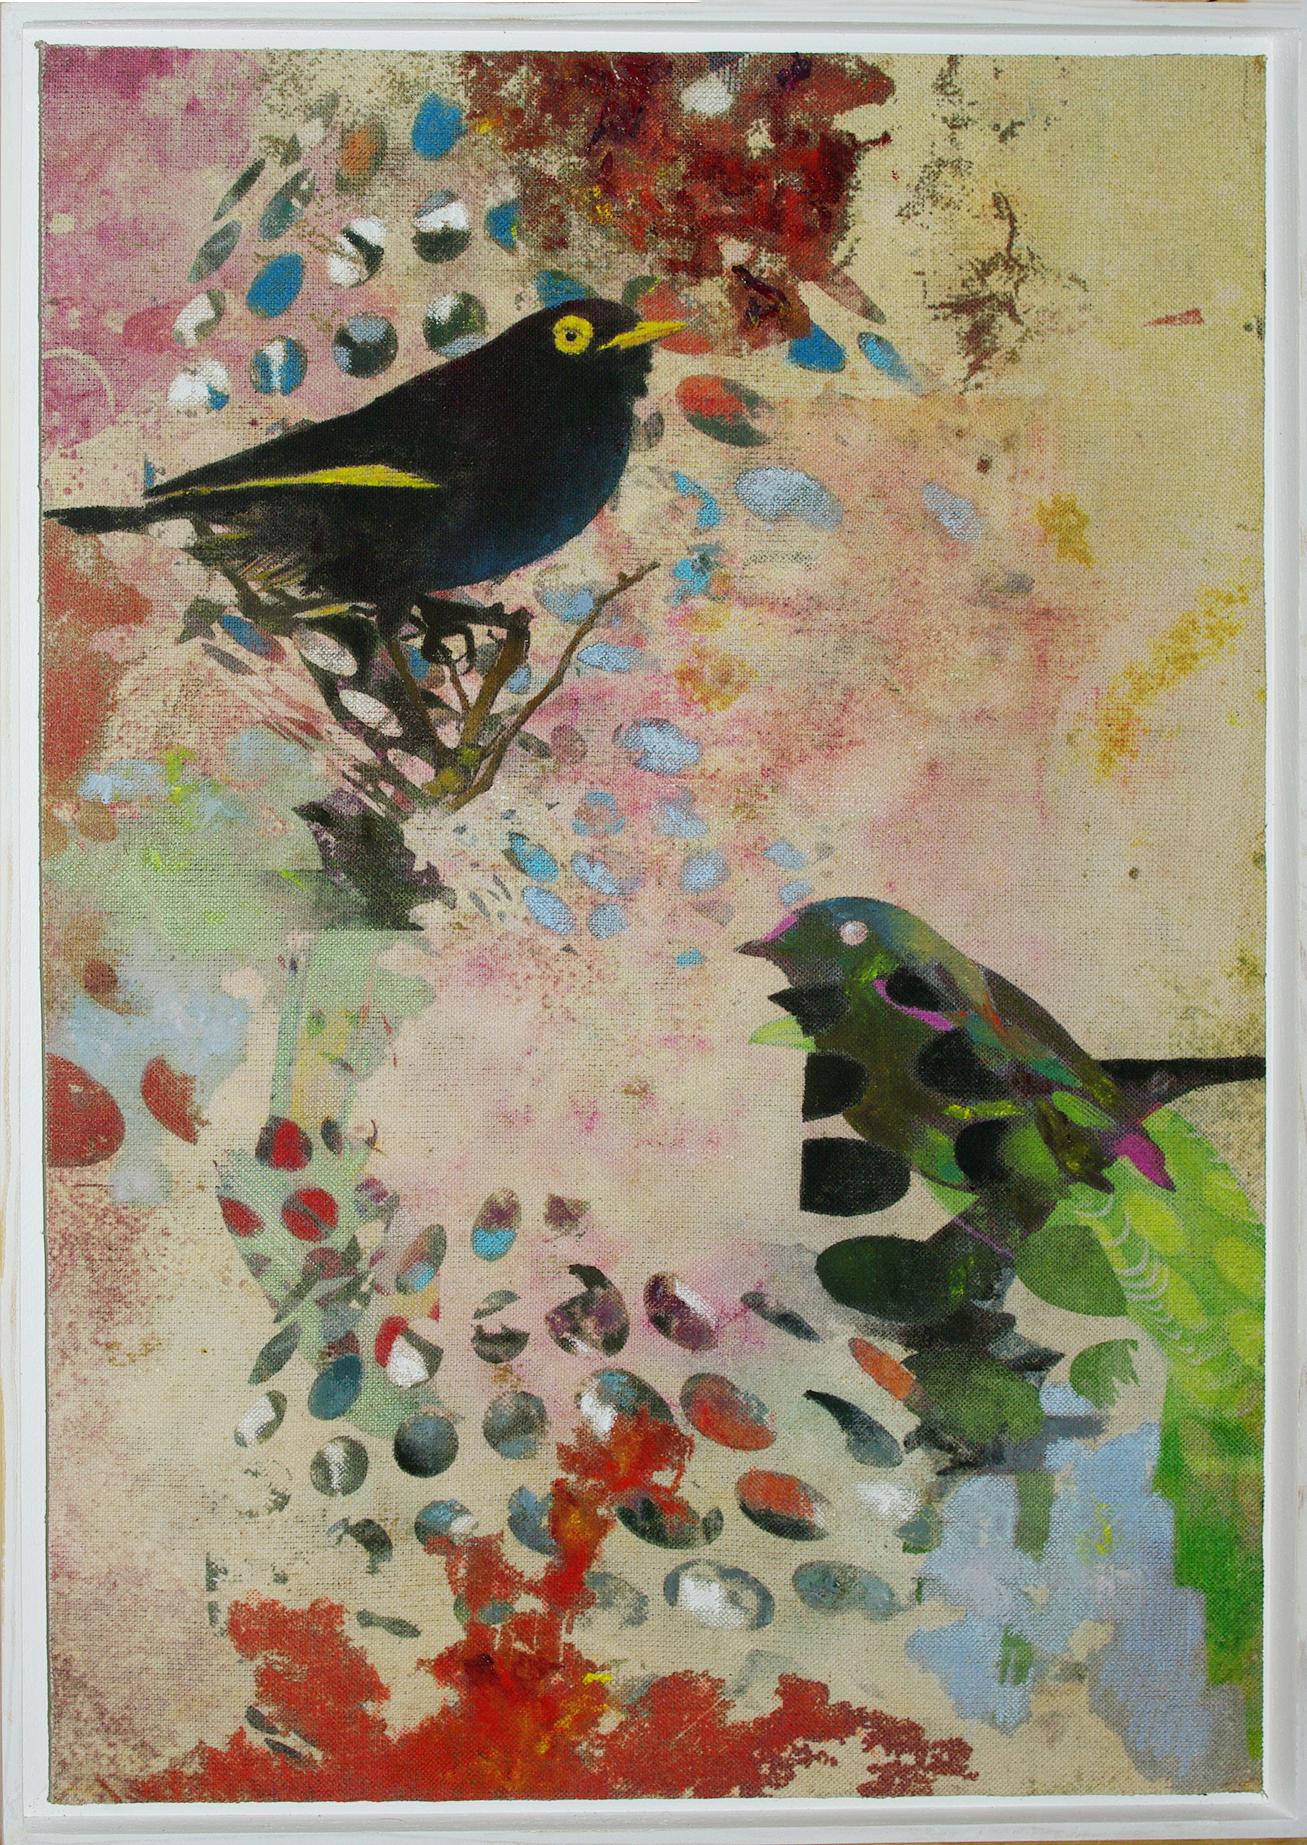 Birds 19a- Contemporary, Abstrakt, Expressionistisch, Modern, Street Art, Surrealistisch